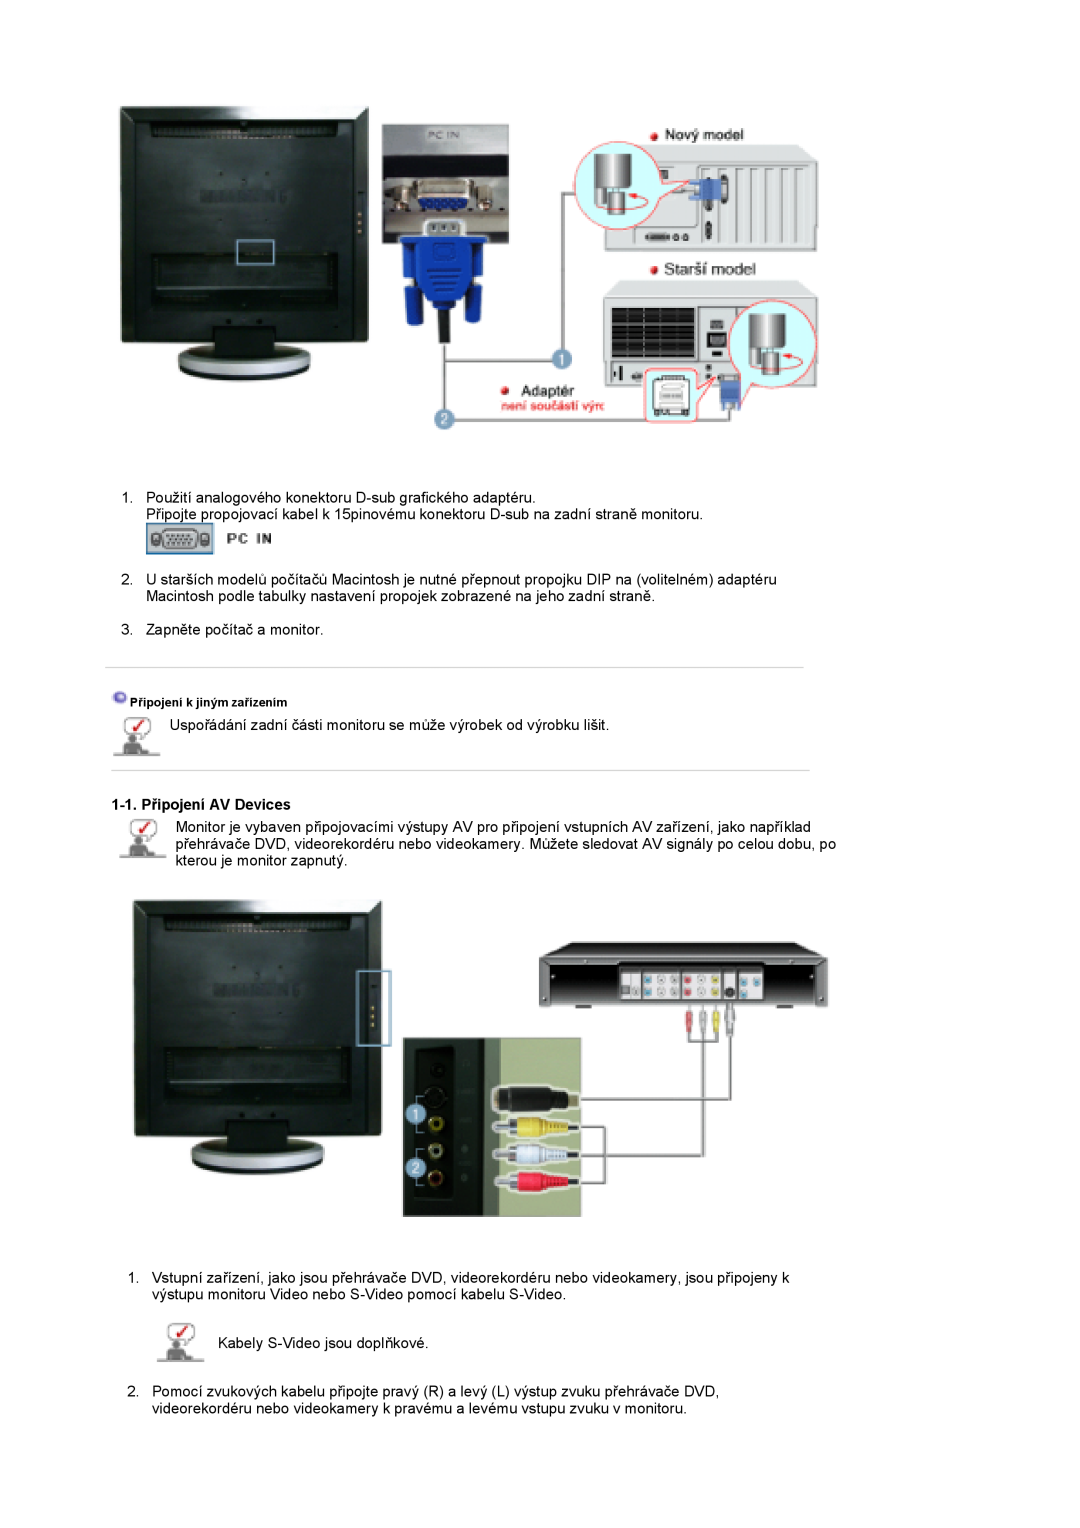 Samsung LS19DOASS/EDC, LS17DOASS/EDC manual 1-1. Připojení AV Devices, Připojení k jiným zařízením 